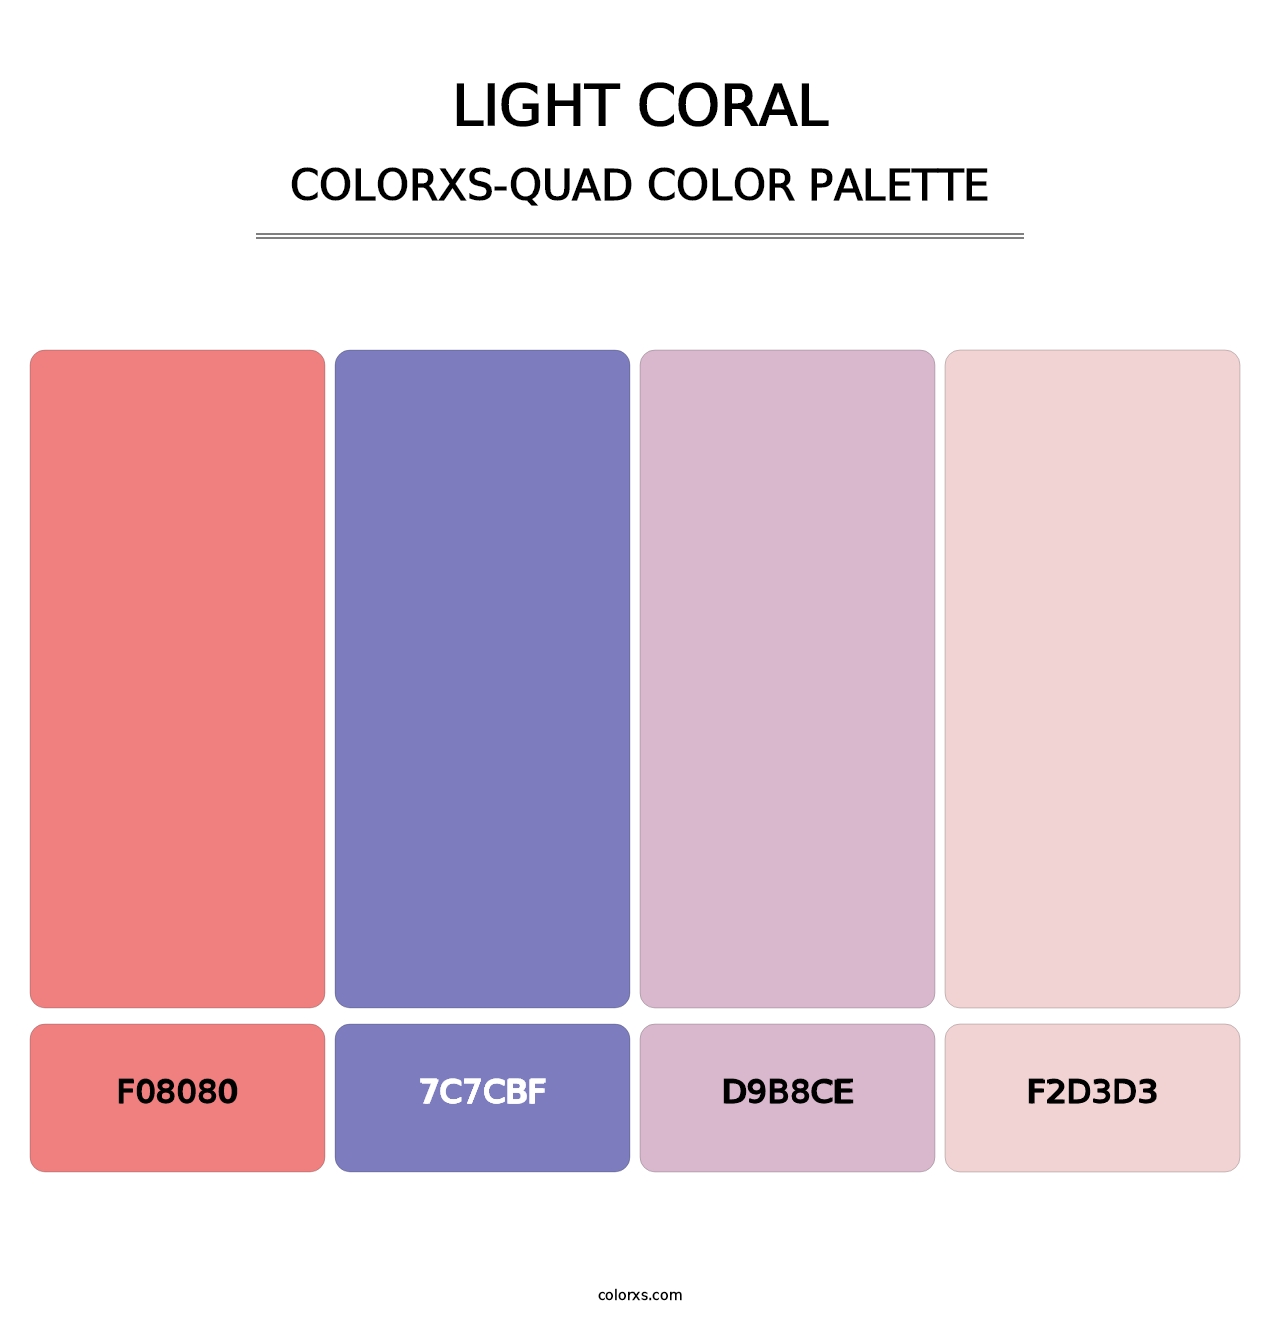 Light Coral - Colorxs Quad Palette